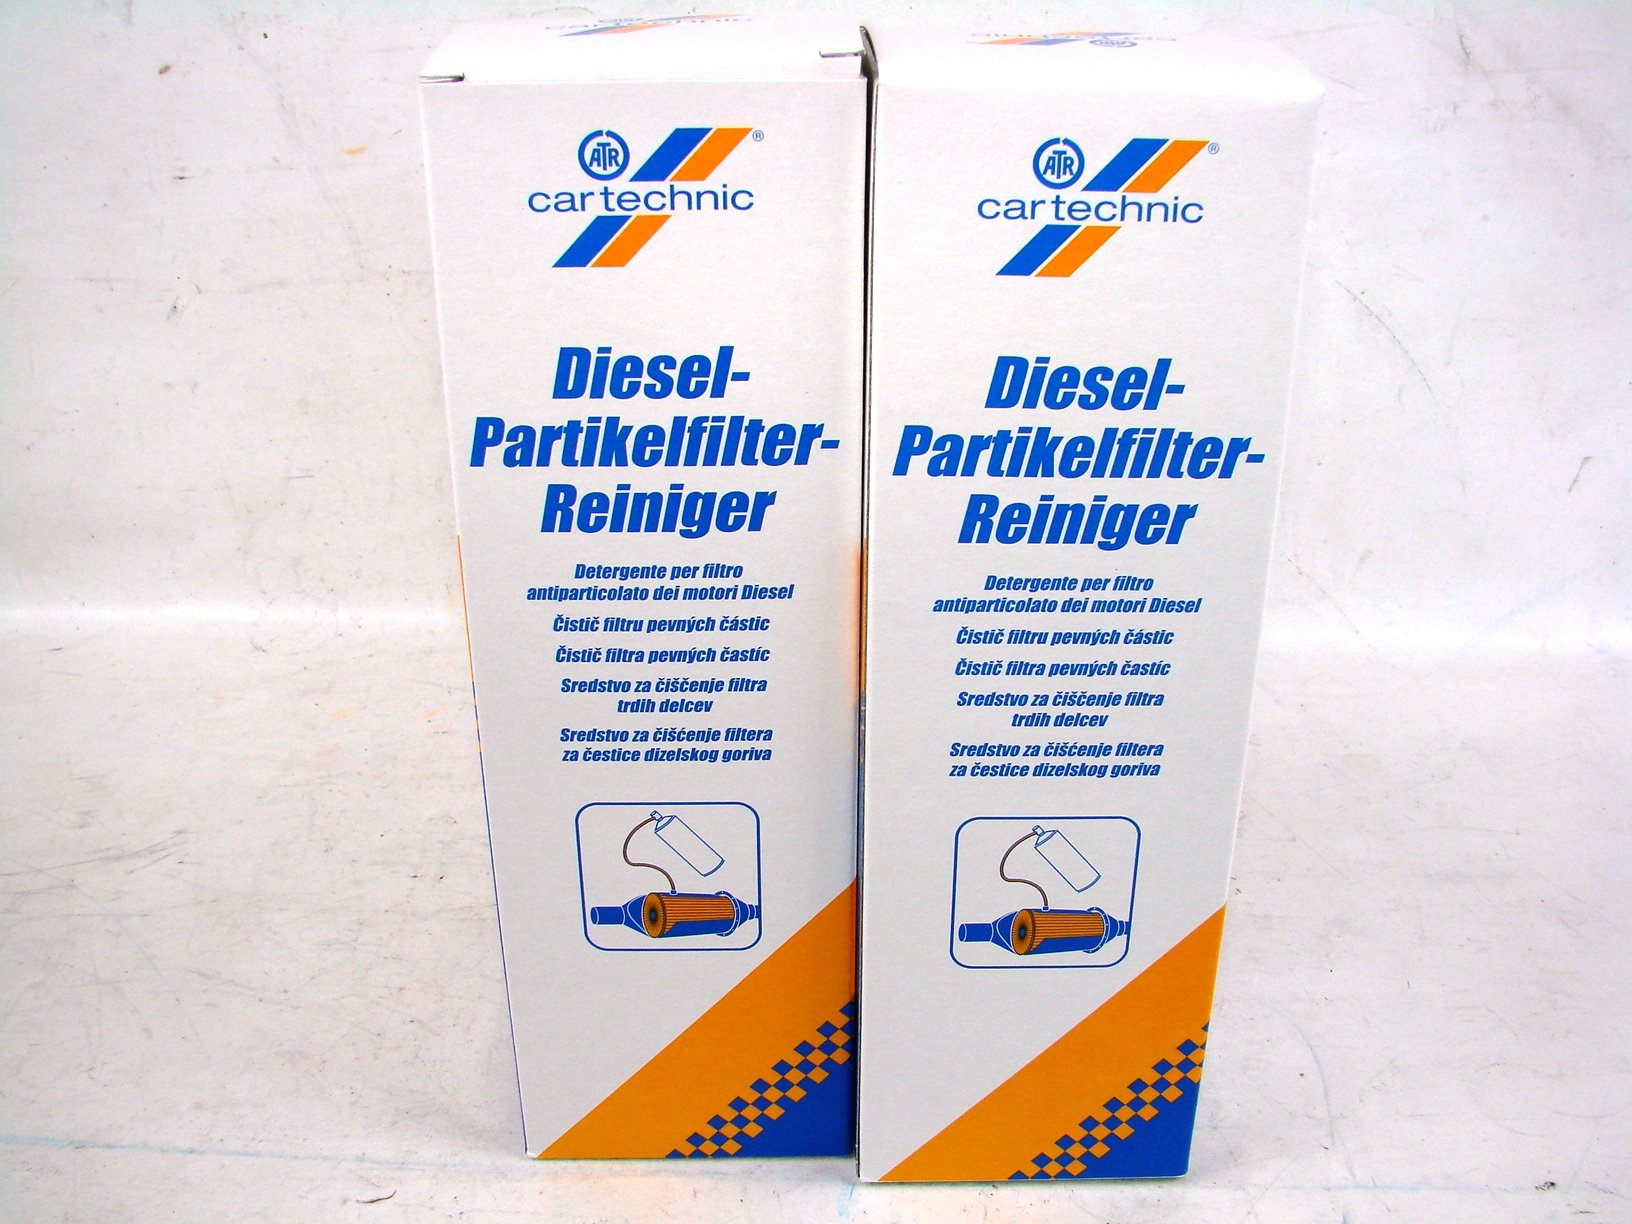 REINIGER DIESEL-PARTIKEL-FILTER 400ML - 554.01.17 - Cartechnic Dieselpartikelfilter-Reiniger - von Cartechnik